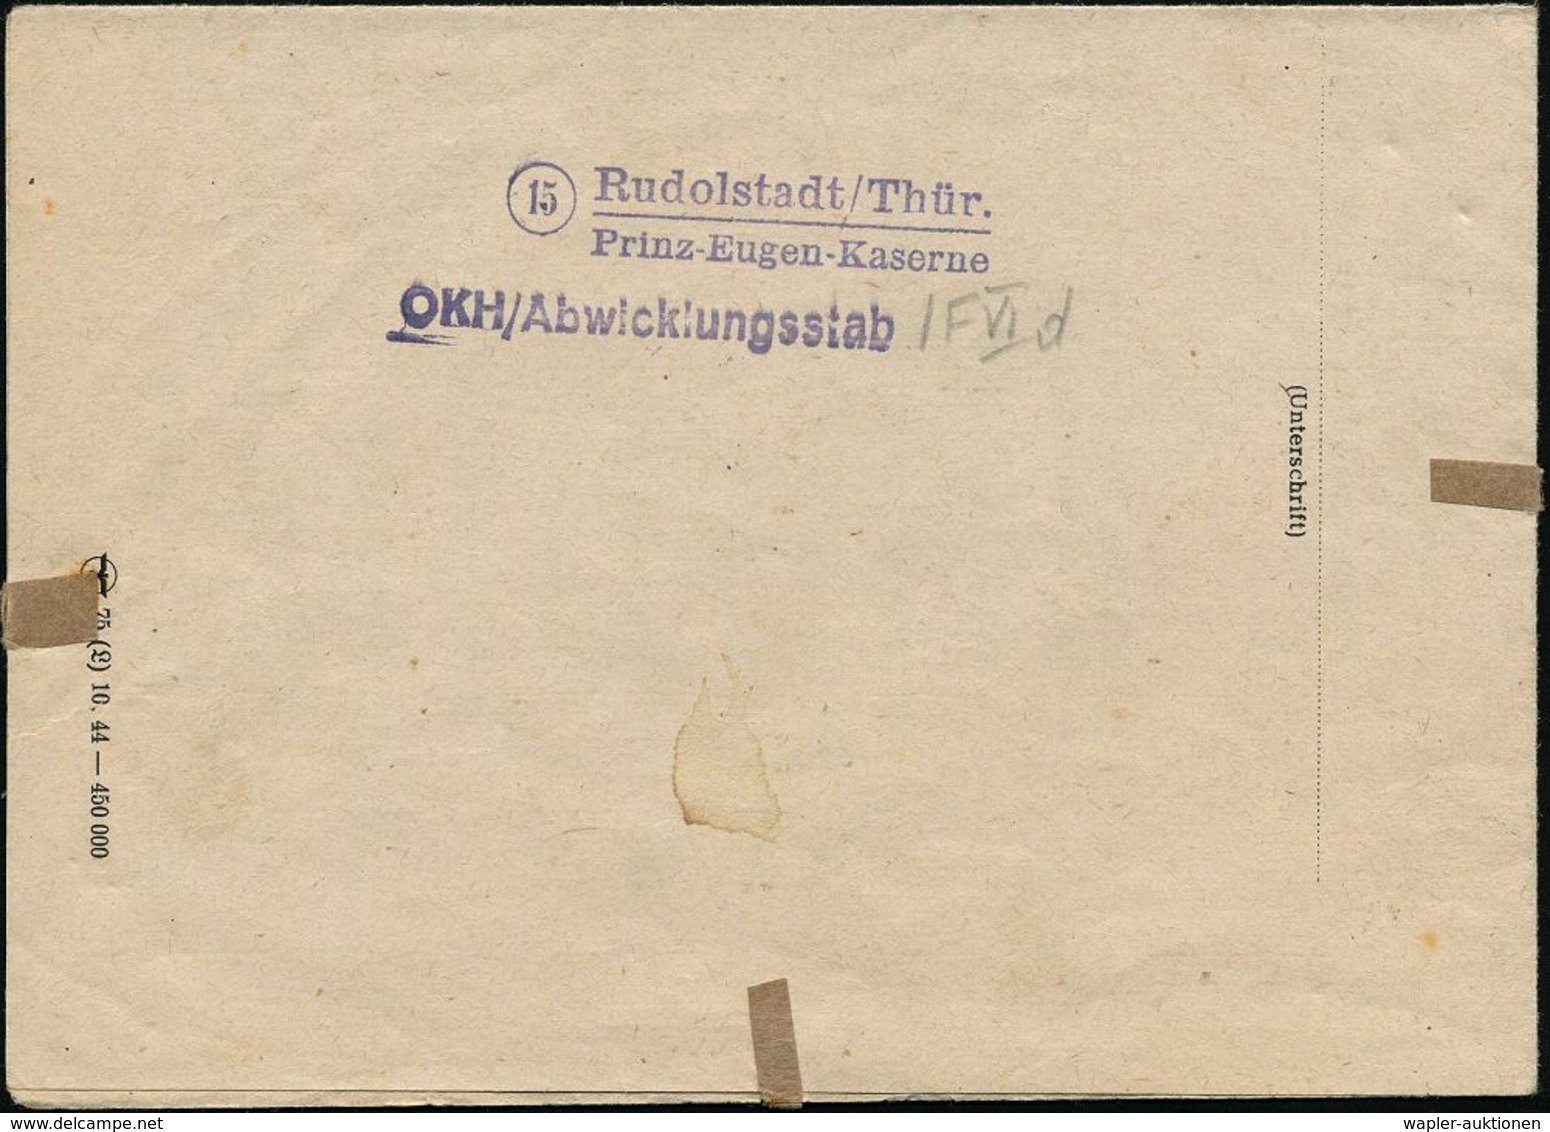 RUDOLSTADT/ O 1945 (17.3.) 2K-Steg + Viol. 1K: Wehrmacht/Briefstempel (unten Undeutl.), Rs. Viol. 2L: (15) Rudolstadt-Th - Guerre Mondiale (Seconde)